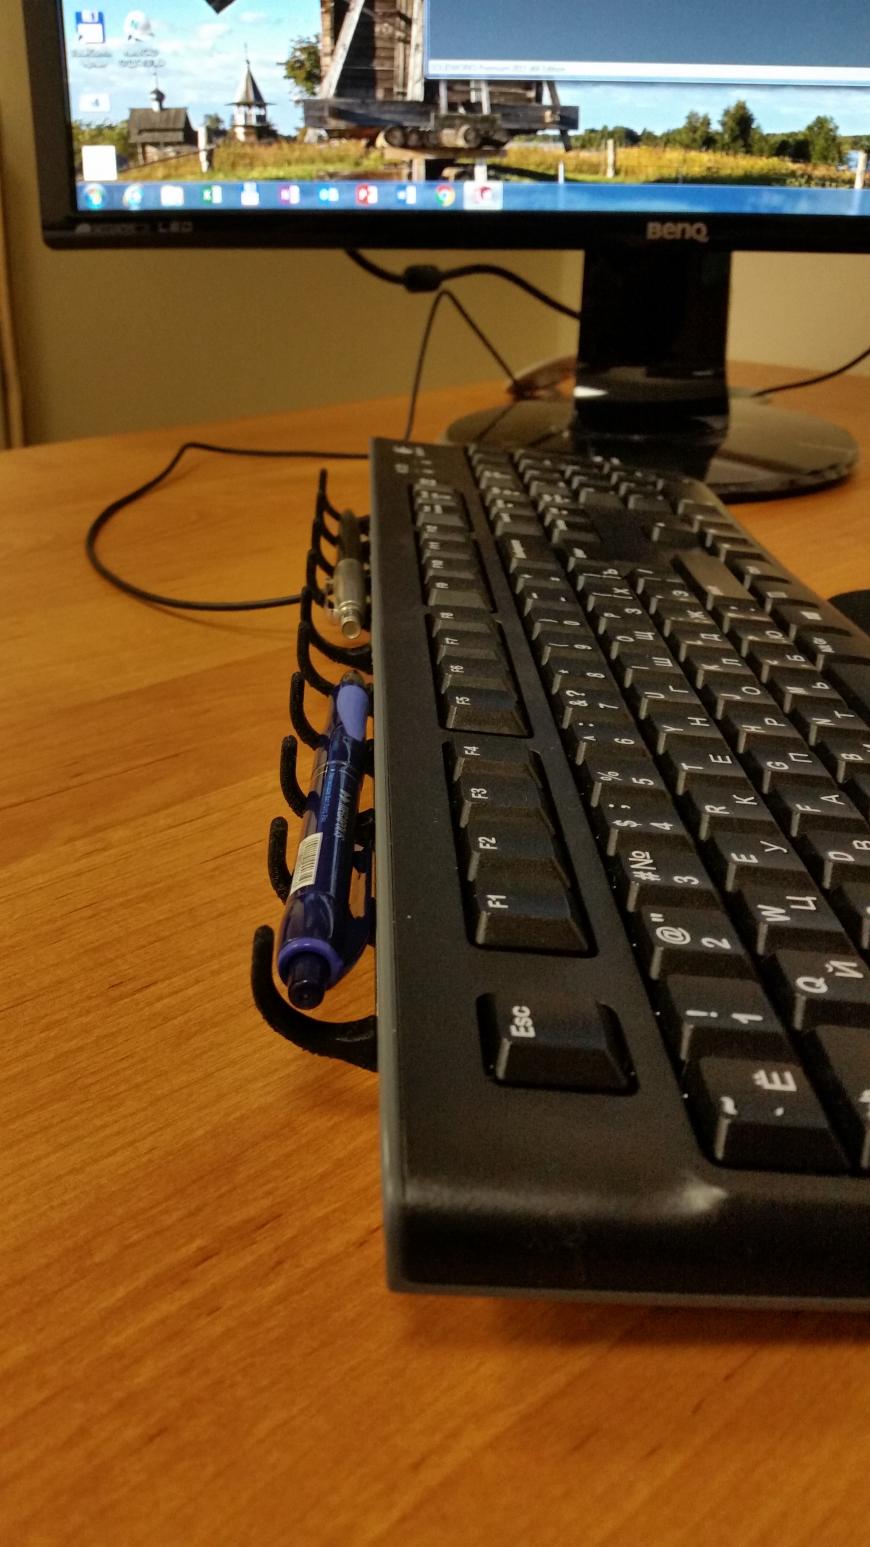 Подставка для ручки на клавиатуру